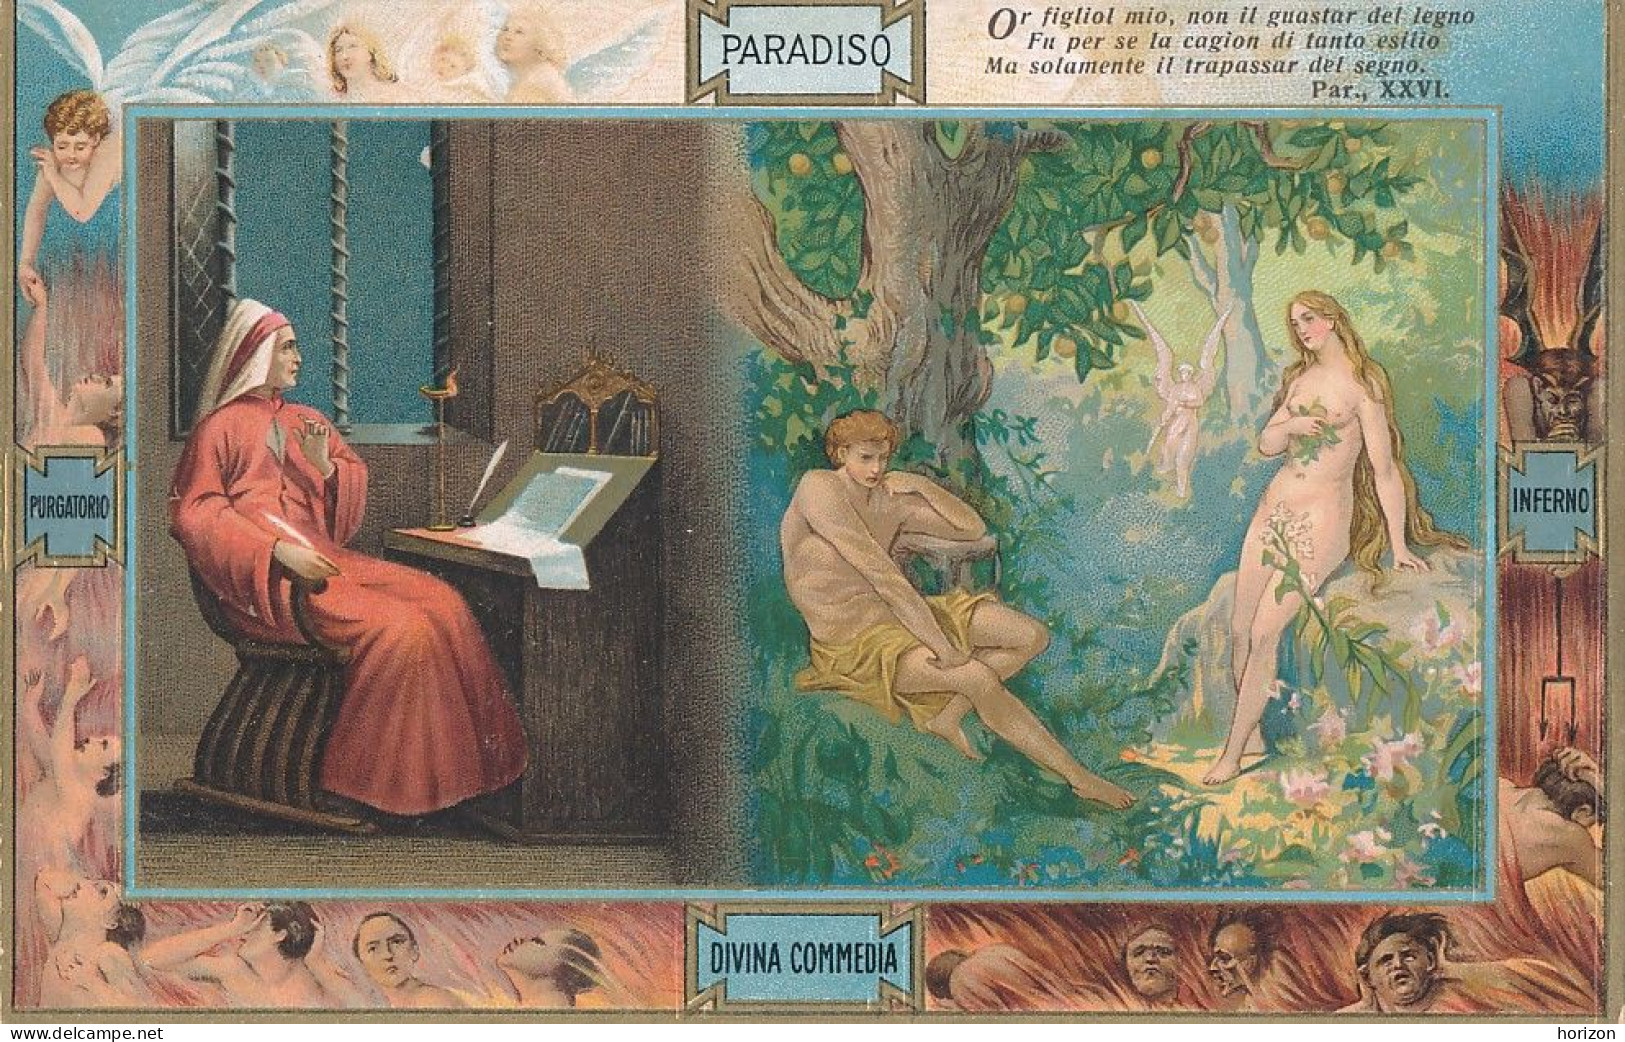 2f.765  DANTE Alighieri - La Divina Commedia - Paradiso - Lotto di 15 cartoline collez,ne S. Sborgi